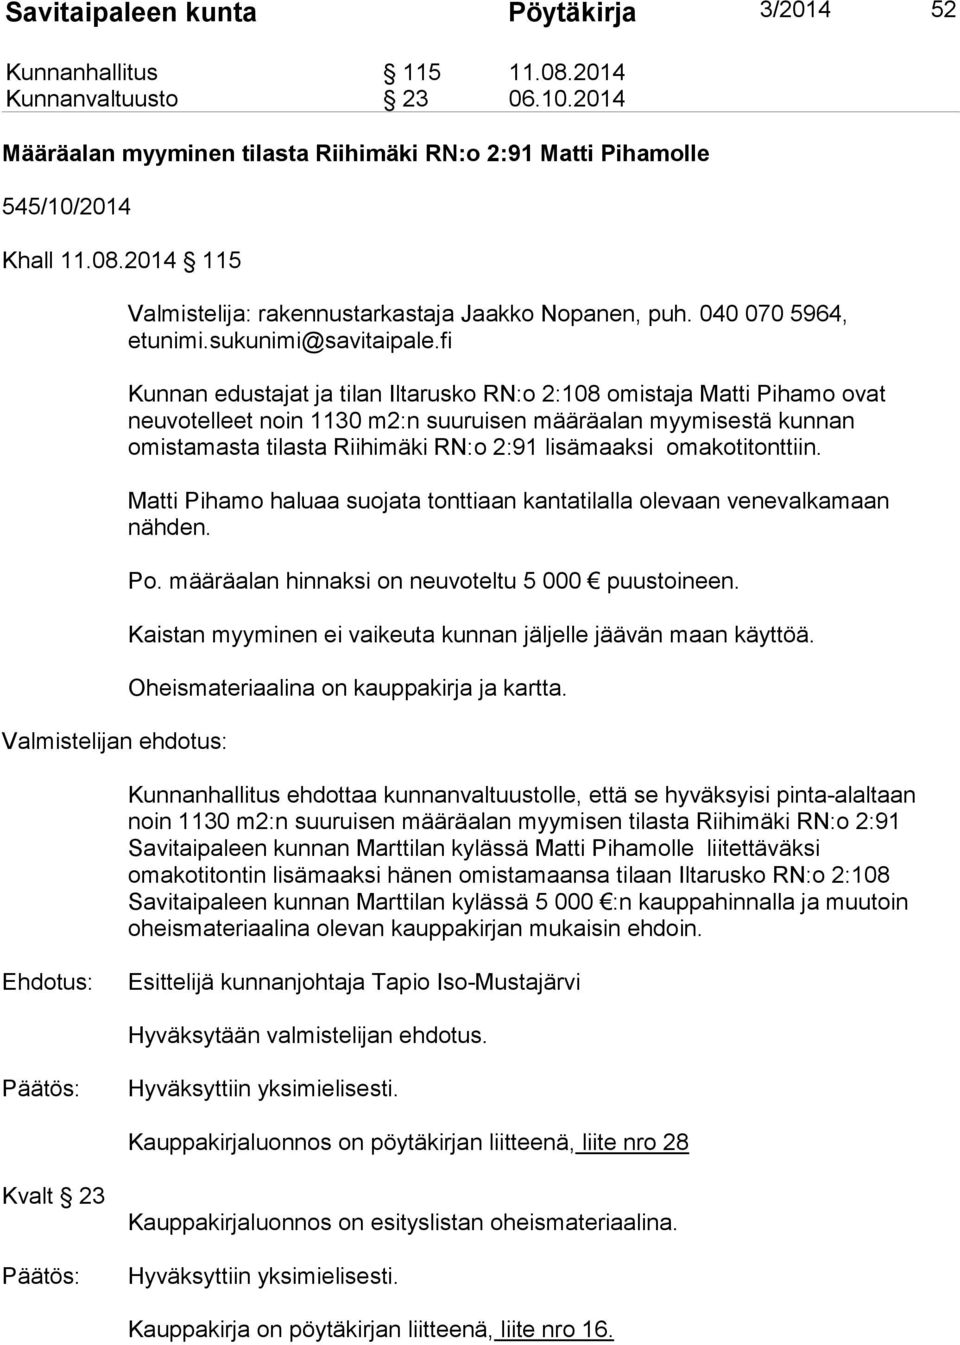 fi Kunnan edustajat ja tilan Iltarusko RN:o 2:108 omistaja Matti Pihamo ovat neuvotelleet noin 1130 m2:n suuruisen määräalan myymisestä kunnan omistamasta tilasta Riihimäki RN:o 2:91 lisämaaksi